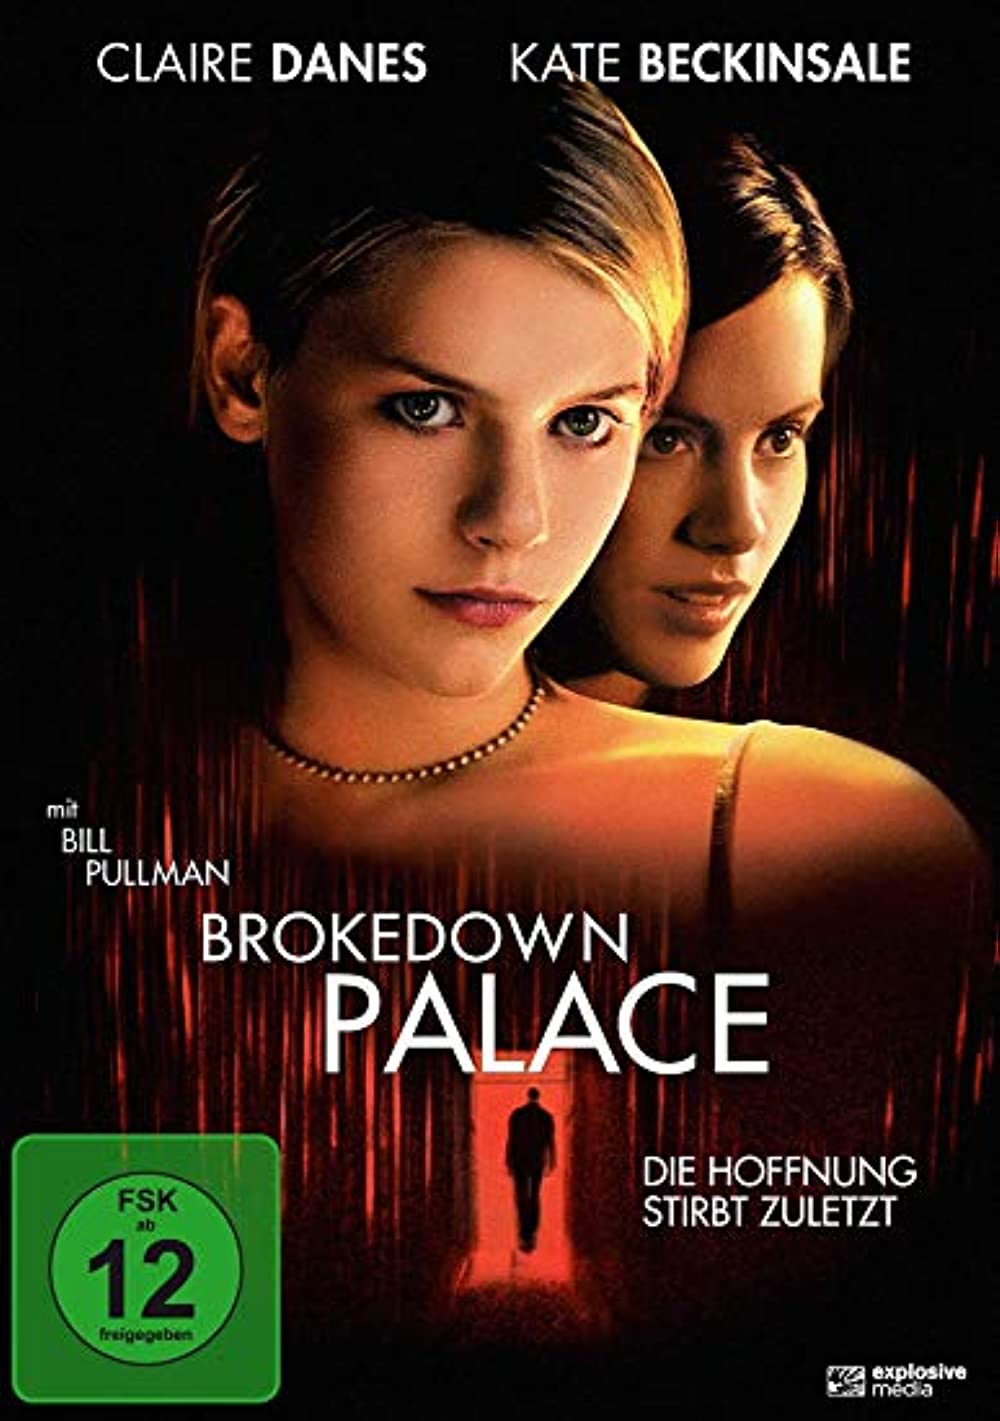 Filmbeschreibung zu Brokedown Palace